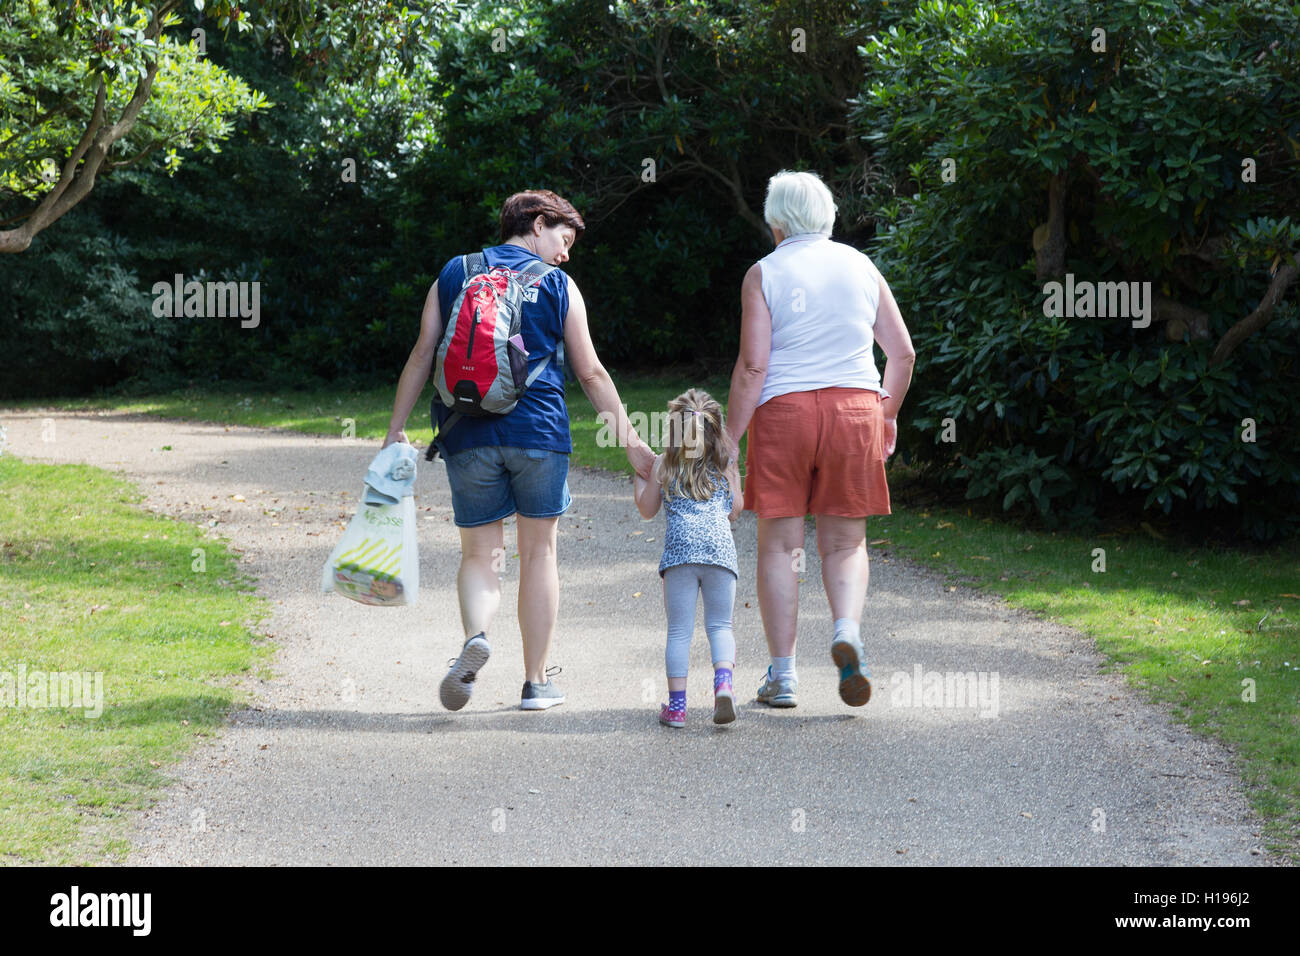 Drei Generationen von Frauen; Kind, Mutter und Großmutter, die in einem Park spazieren, von hinten gesehen, Großbritannien - Mehrgenerationenfamilie. Stockfoto